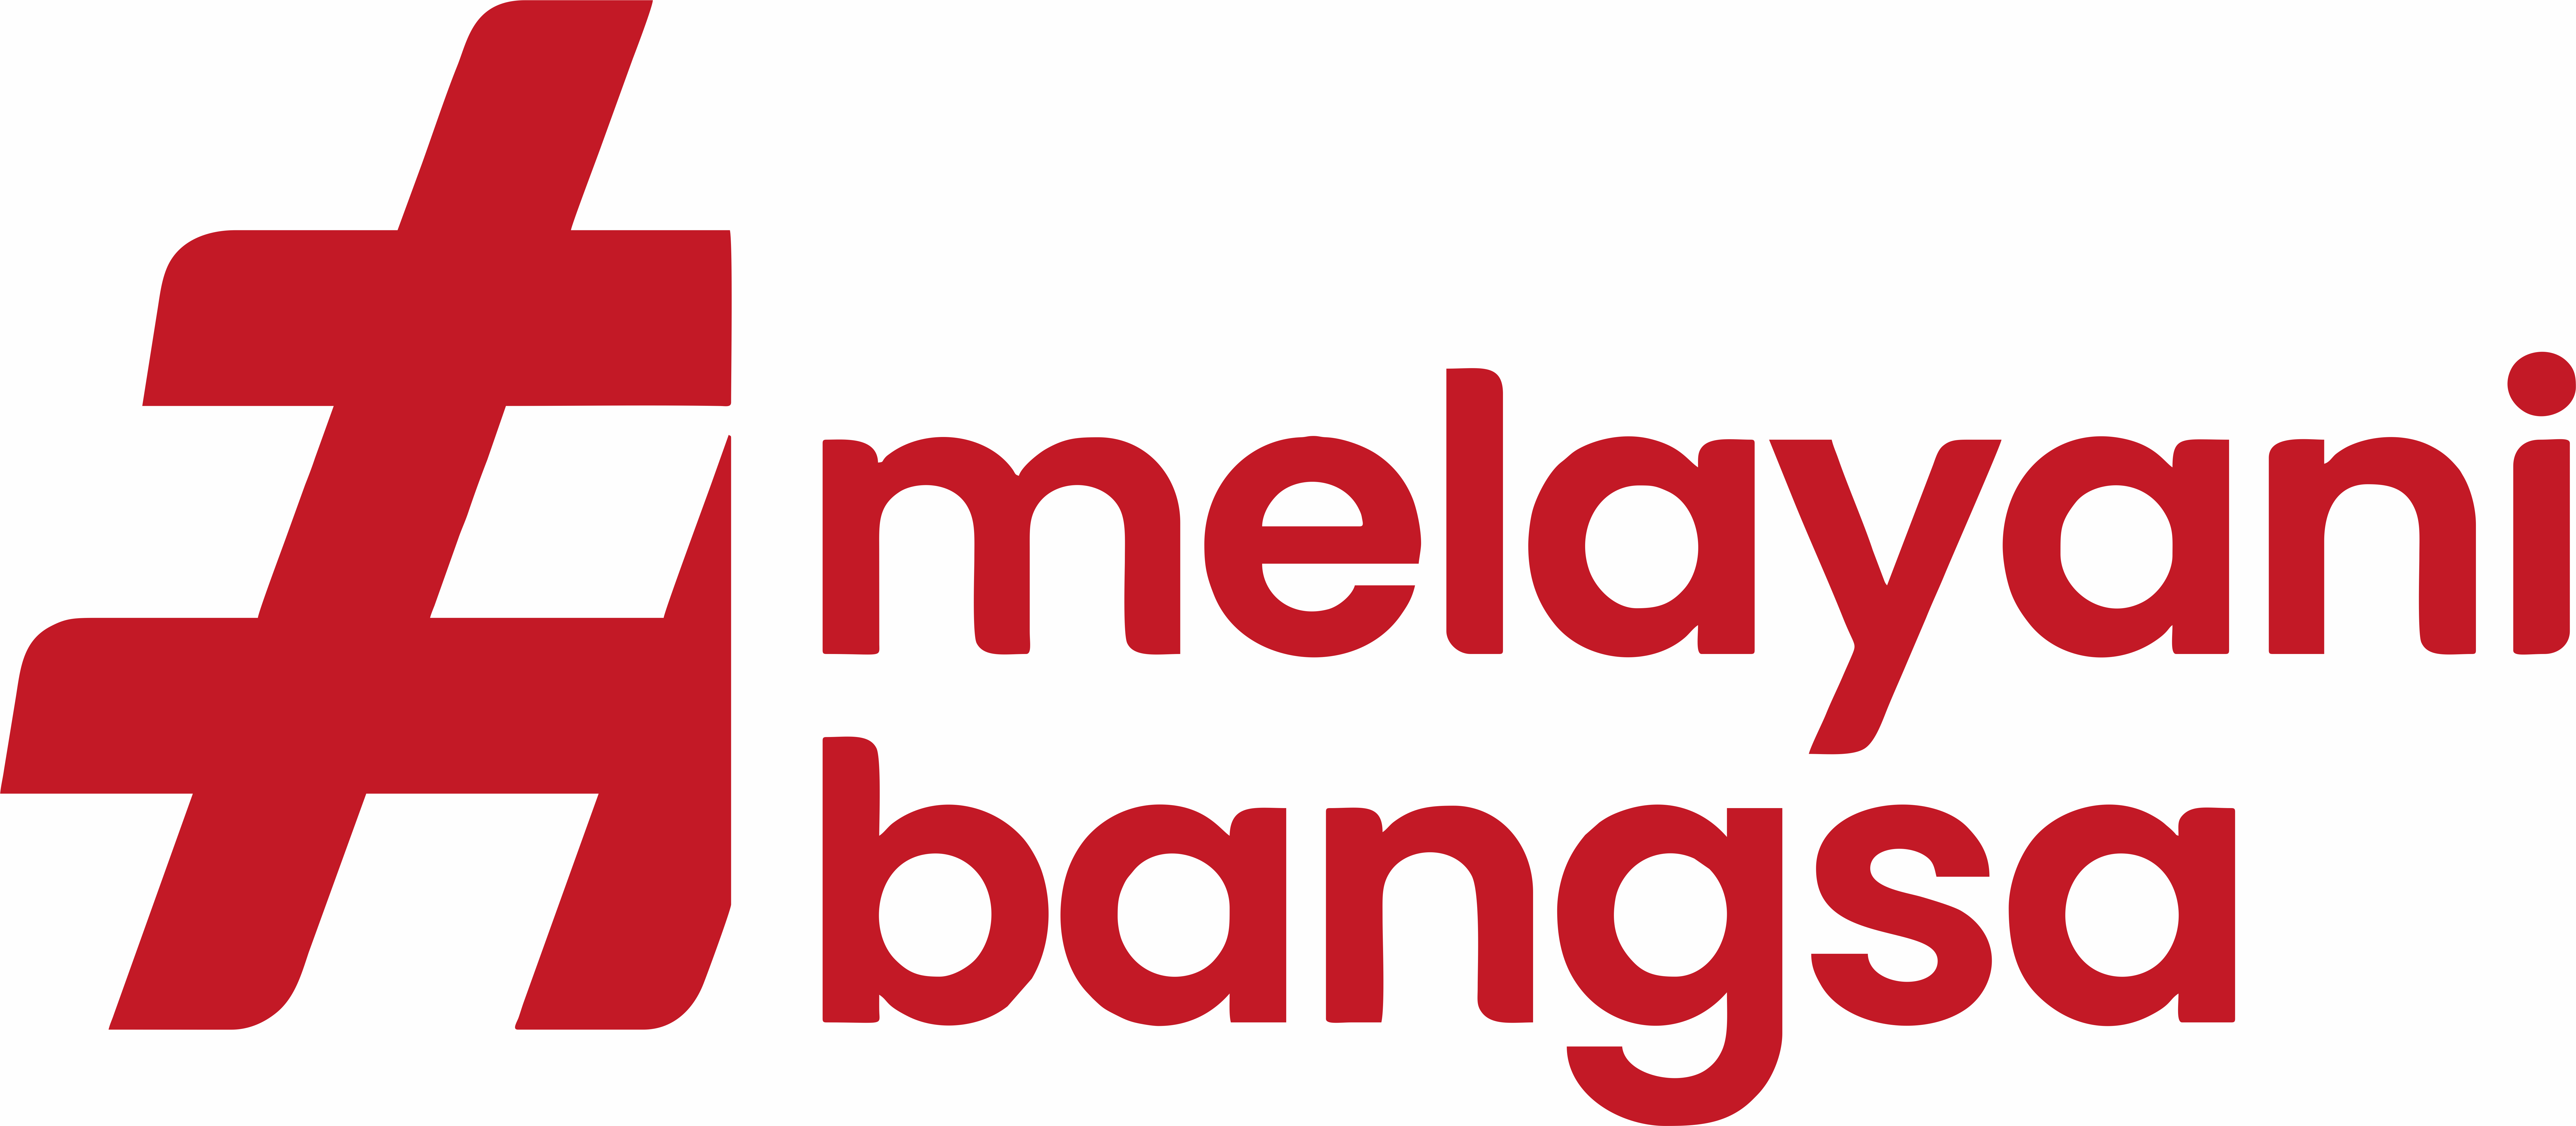 bangga (1)